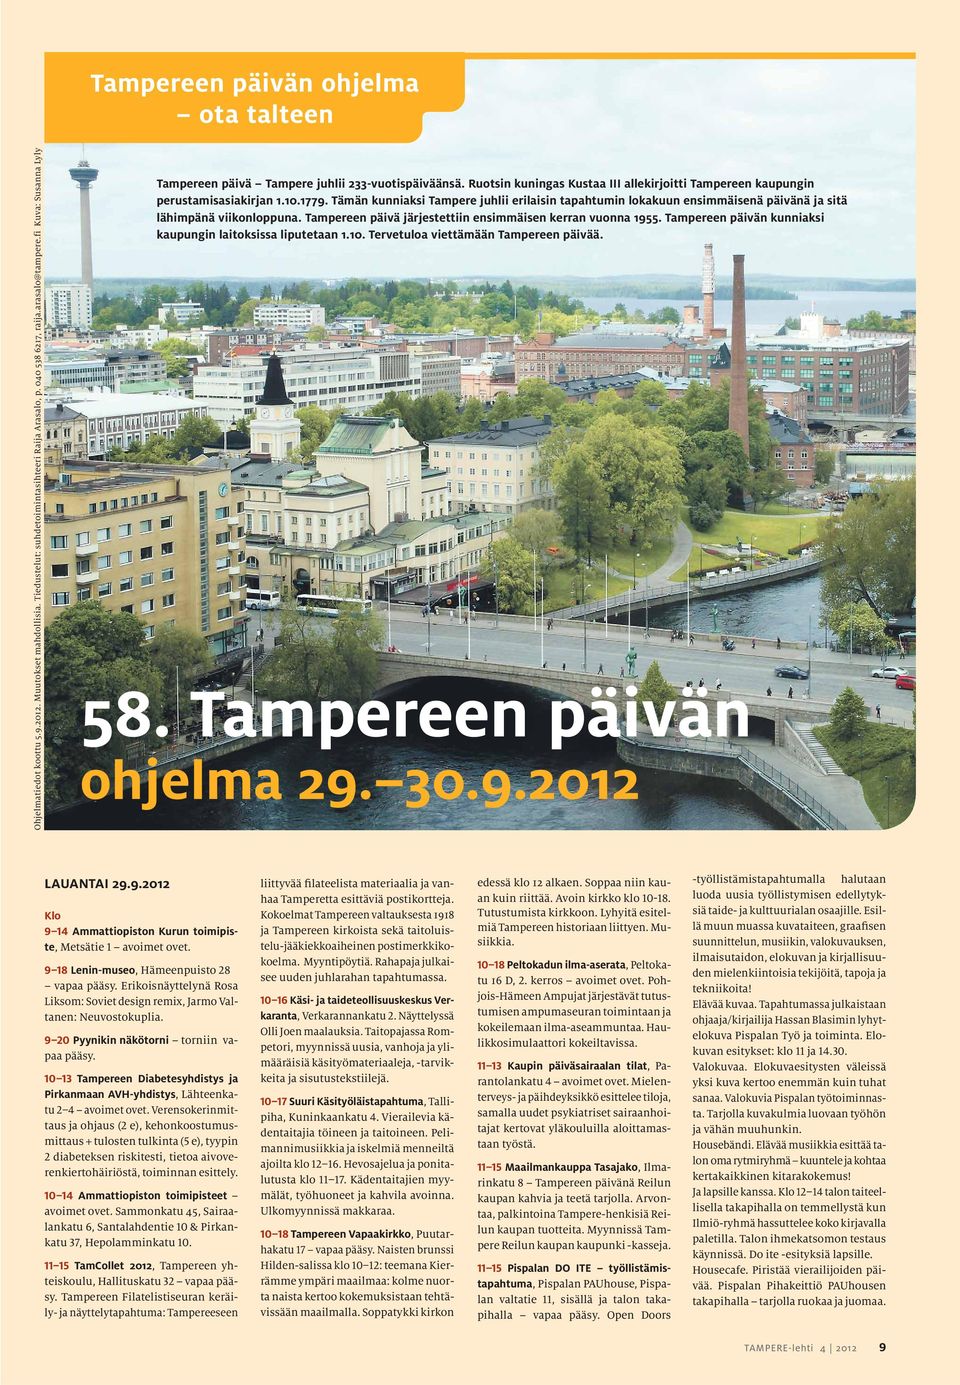 Tämän kunniaksi Tampere juhlii erilaisin tapahtumin lokakuun ensimmäisenä päivänä ja sitä lähimpänä viikonloppuna. Tampereen päivä järjestettiin ensimmäisen kerran vuonna 1955.